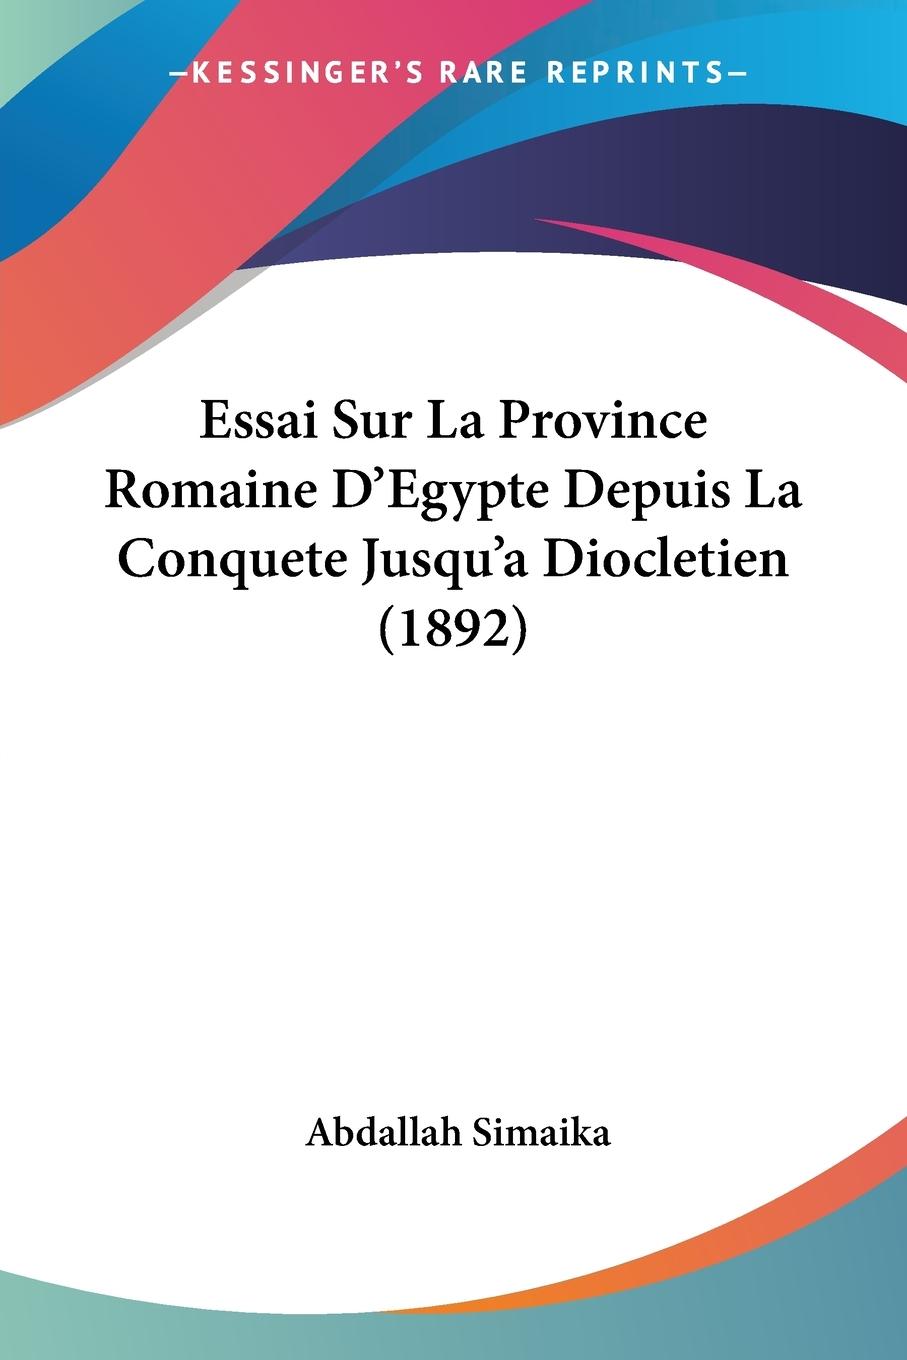 Essai Sur La Province Romaine D Egypte Depuis La Conquete Jusqu a Diocletien (1892) - Simaika, Abdallah